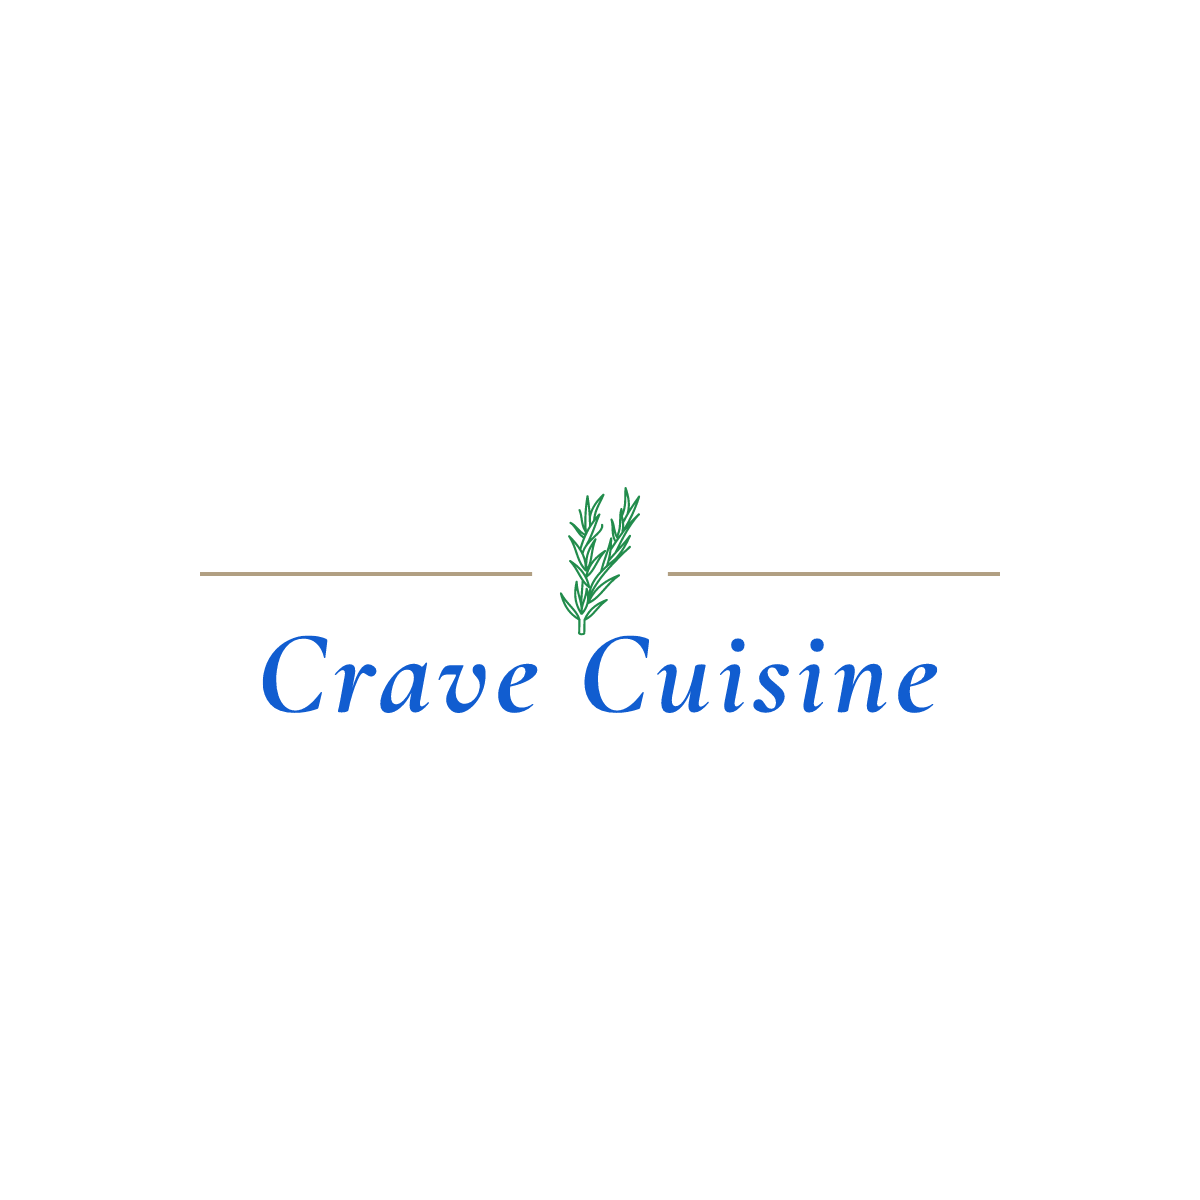 Crave Cuisine